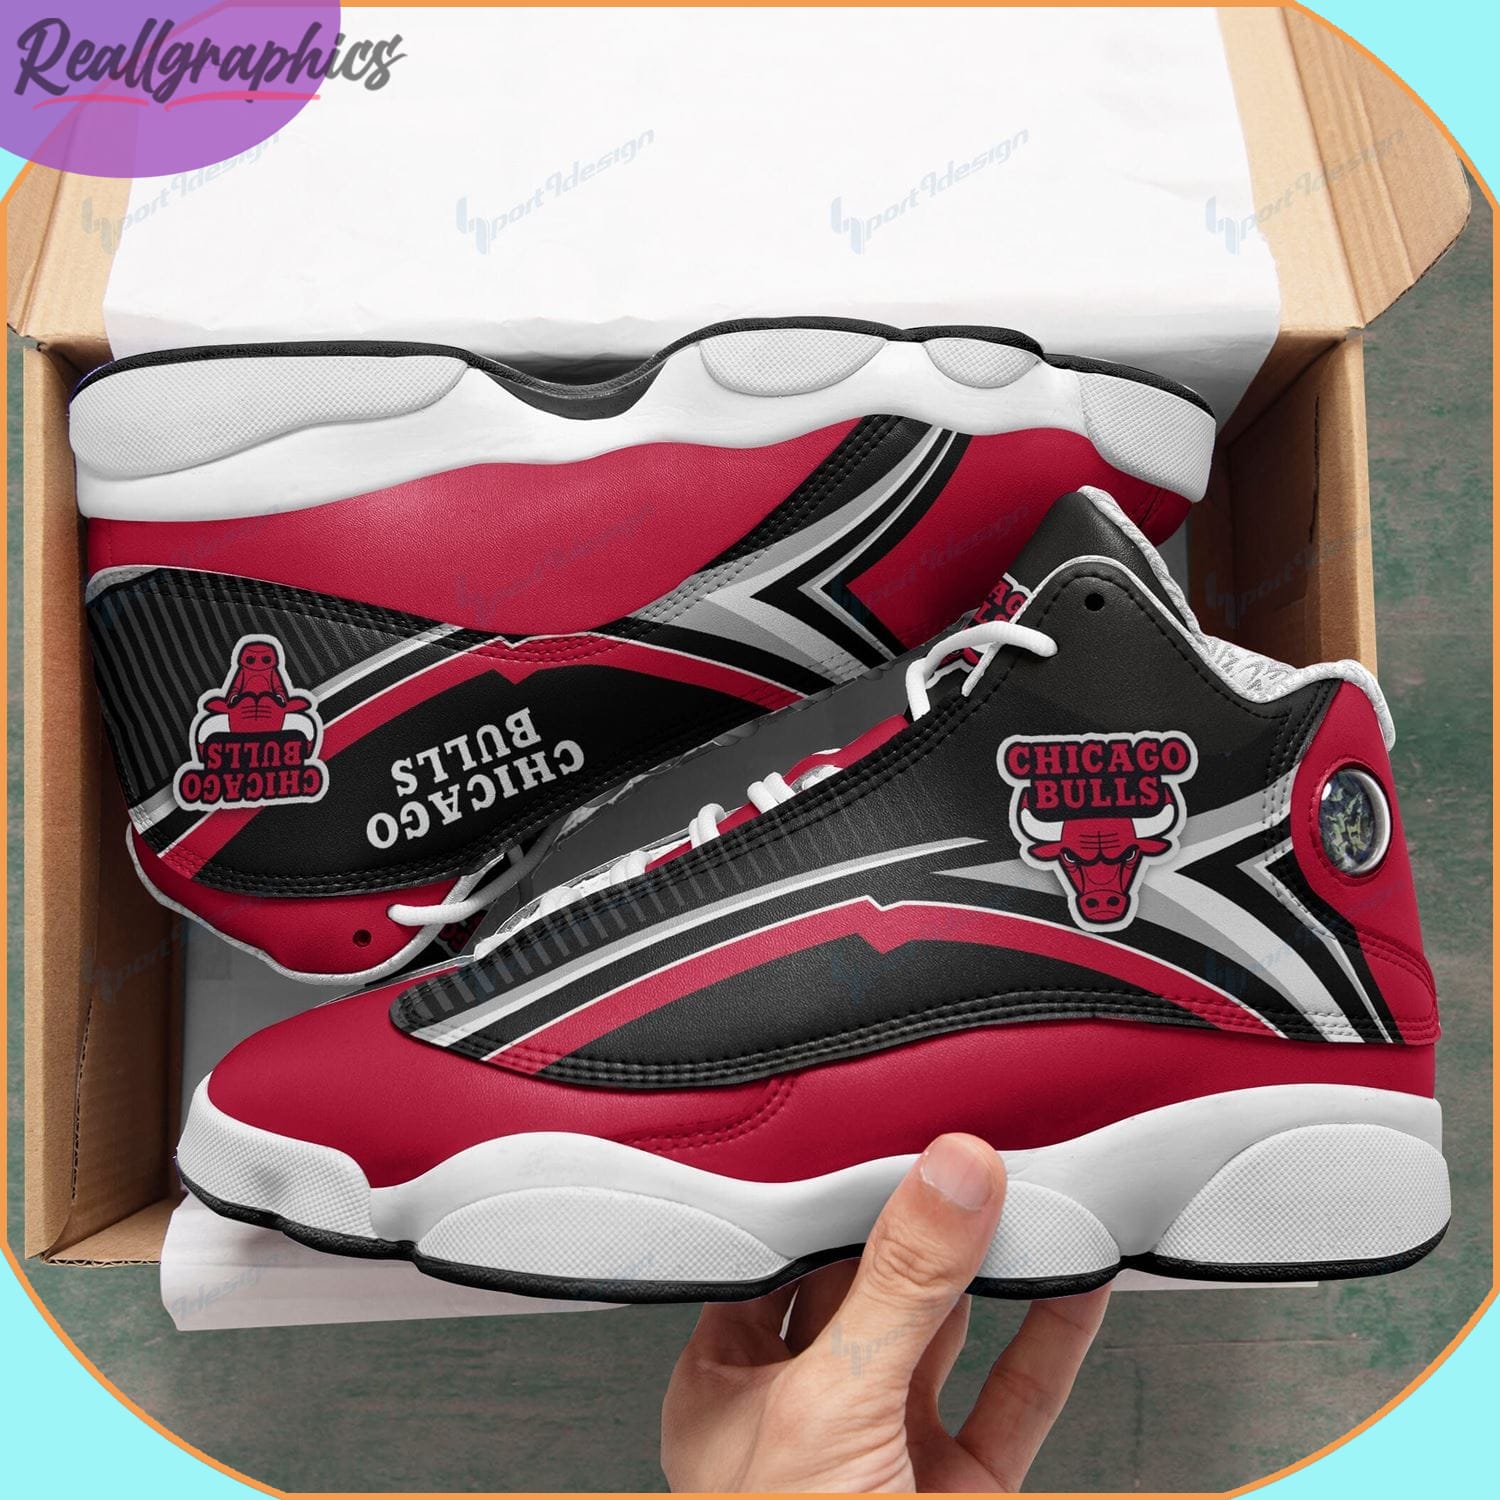 Chicago Bulls AJordan 13 Sneakers